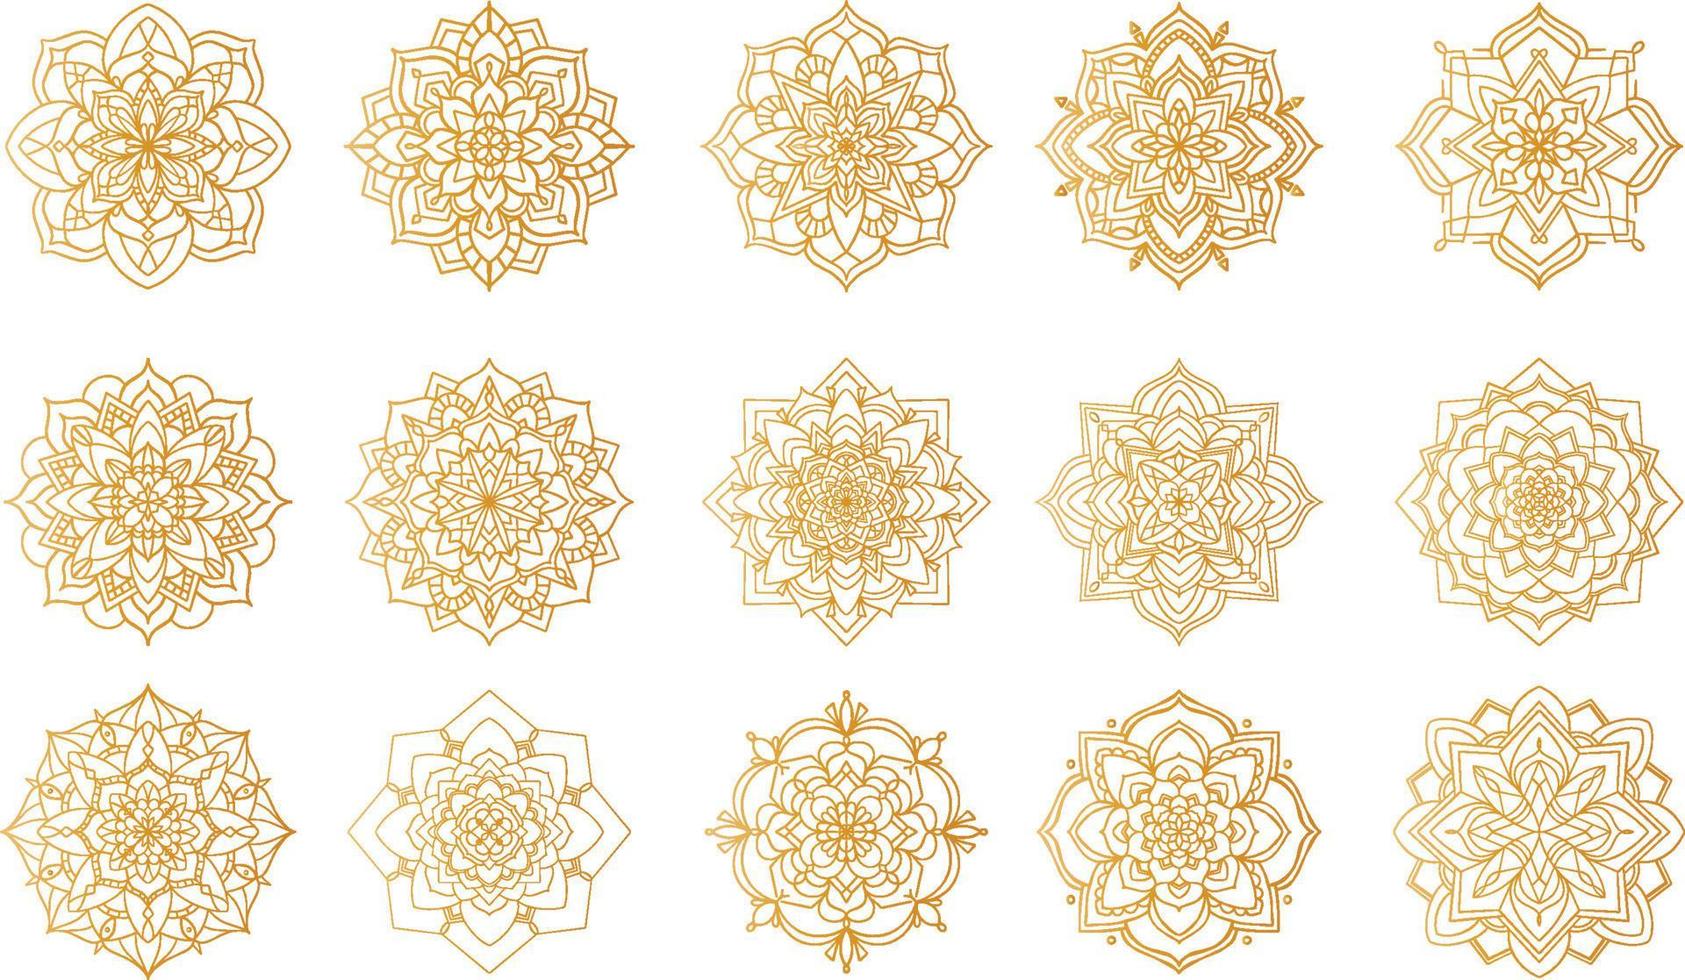 gouden luxe mandala ontwerp vector logo pictogram illustratie om af te drukken, poster, dekking, oosterse ronde patroon. islam, arabisch, indisch, turks, pakistan, chinees, Ottomaanse motieven. handgetekende bloemen